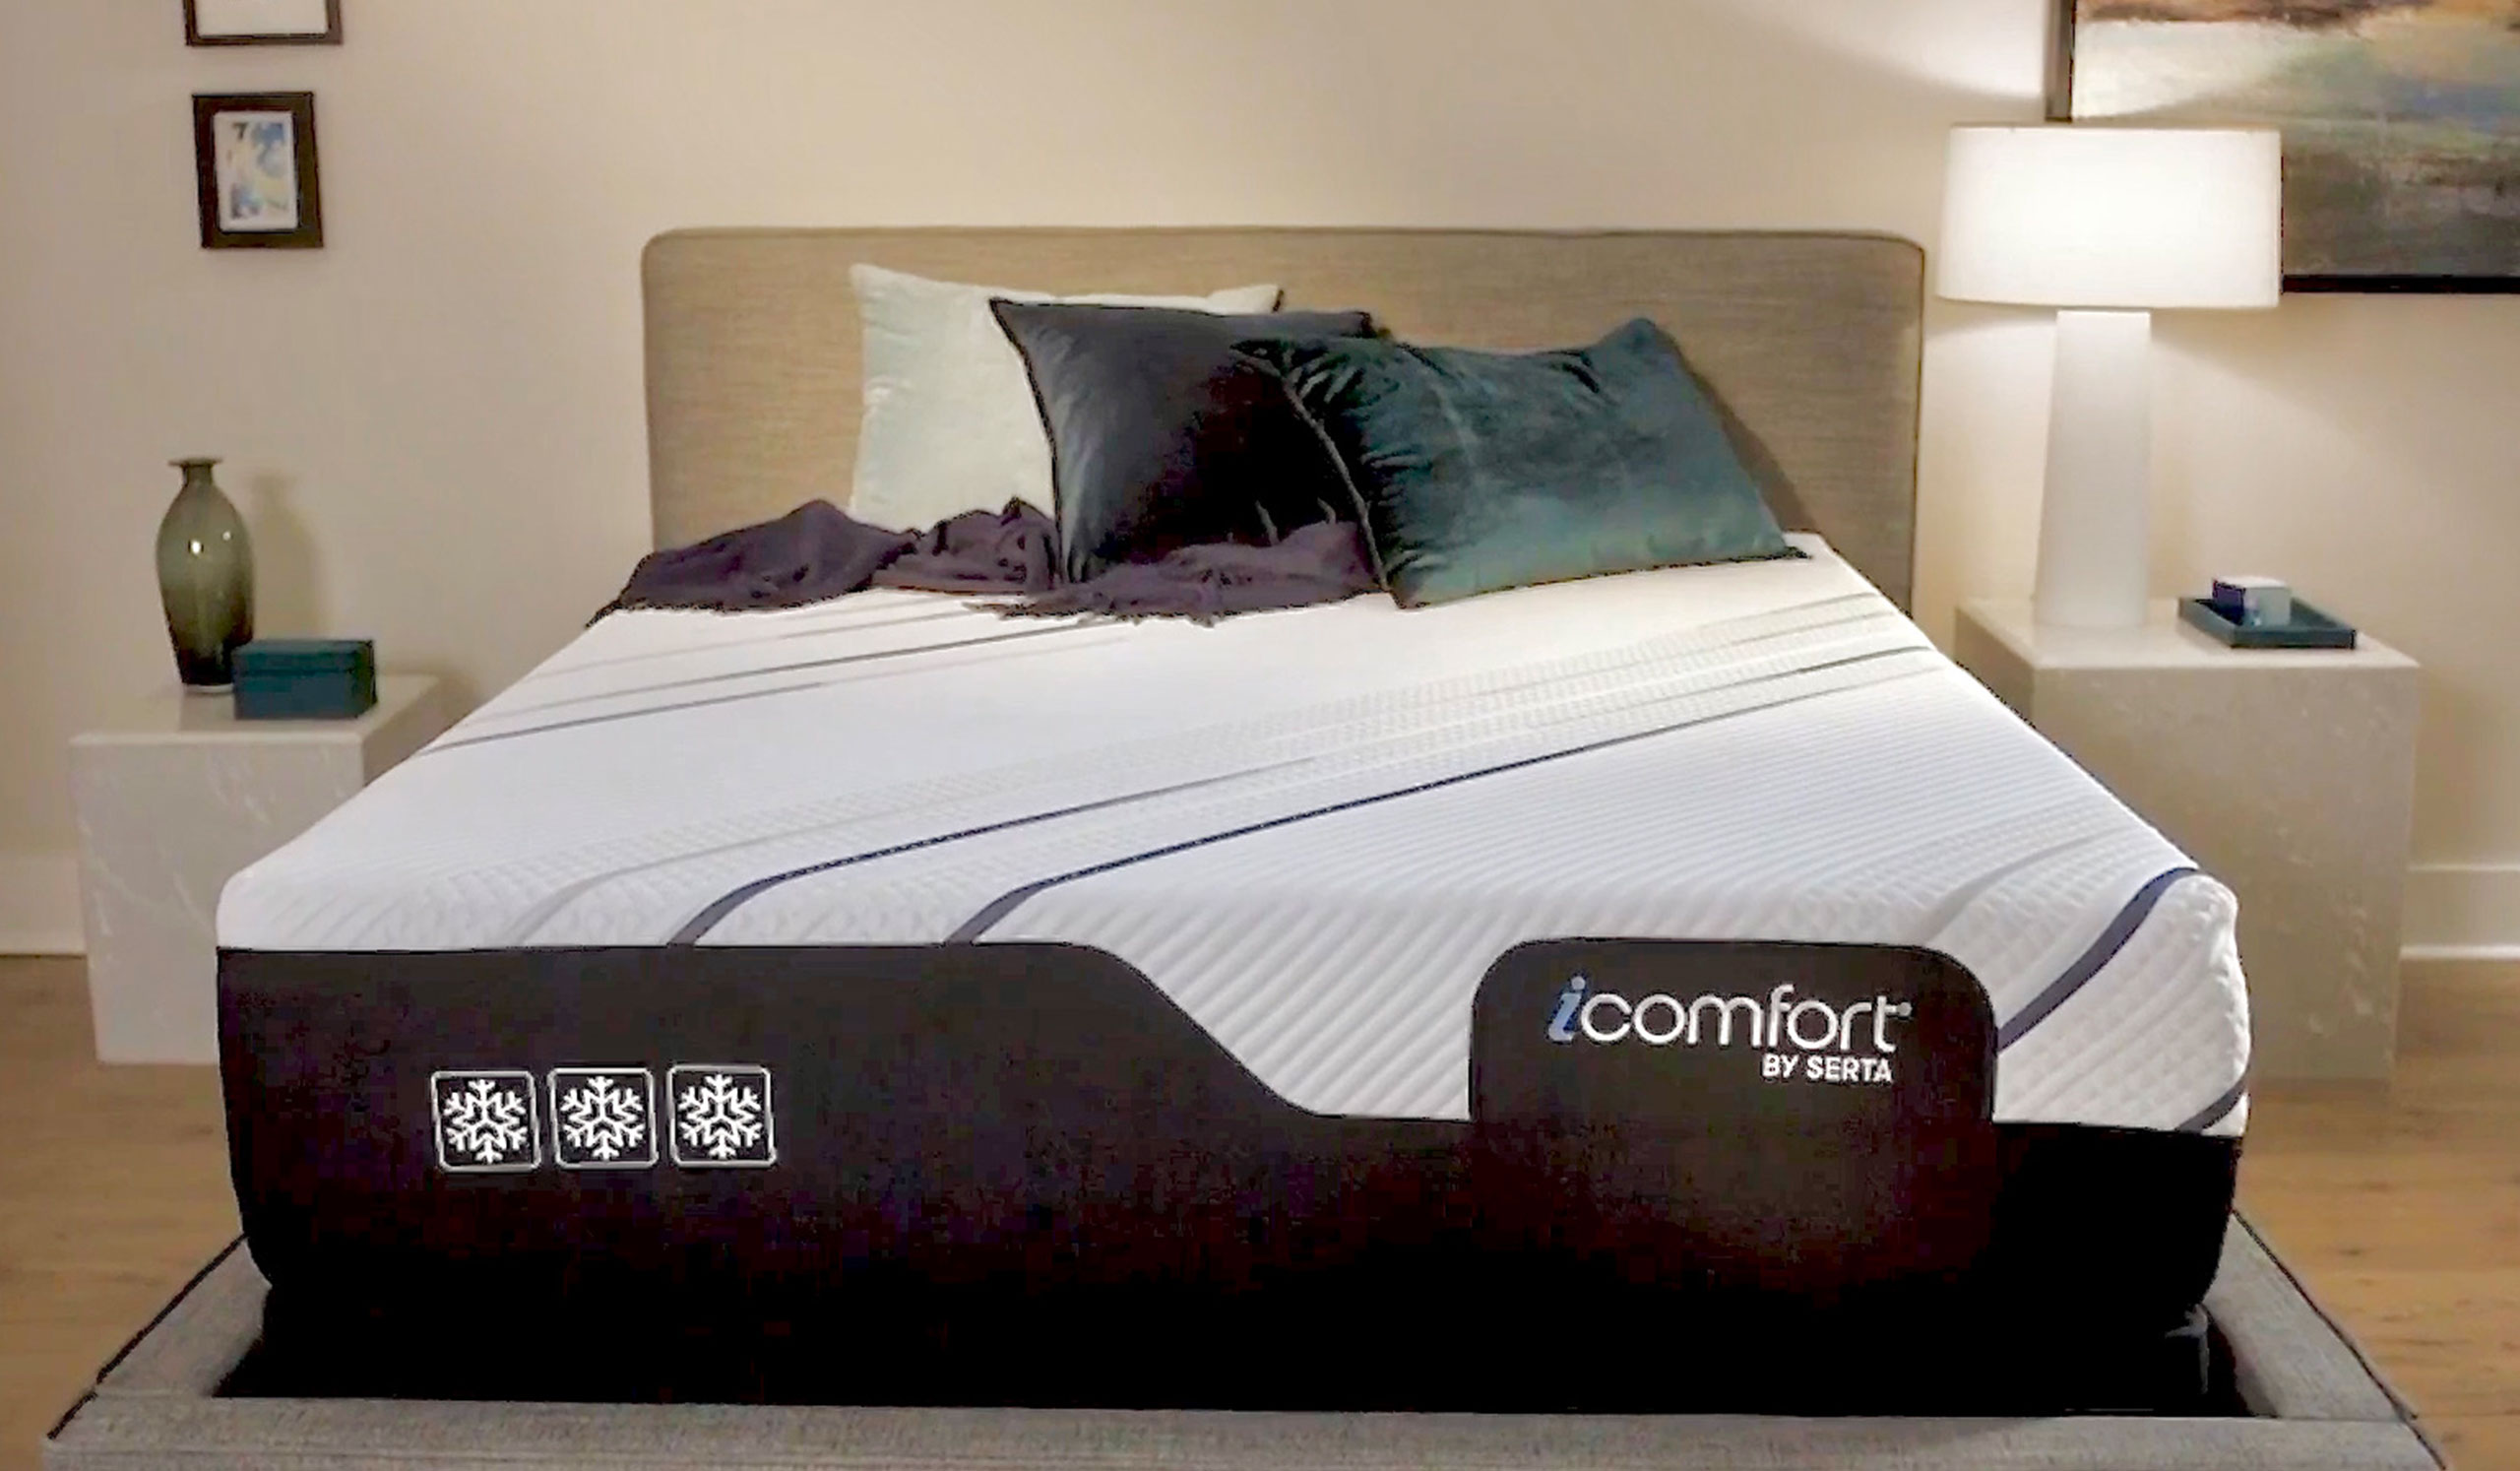 icomfort foam mattress reviews